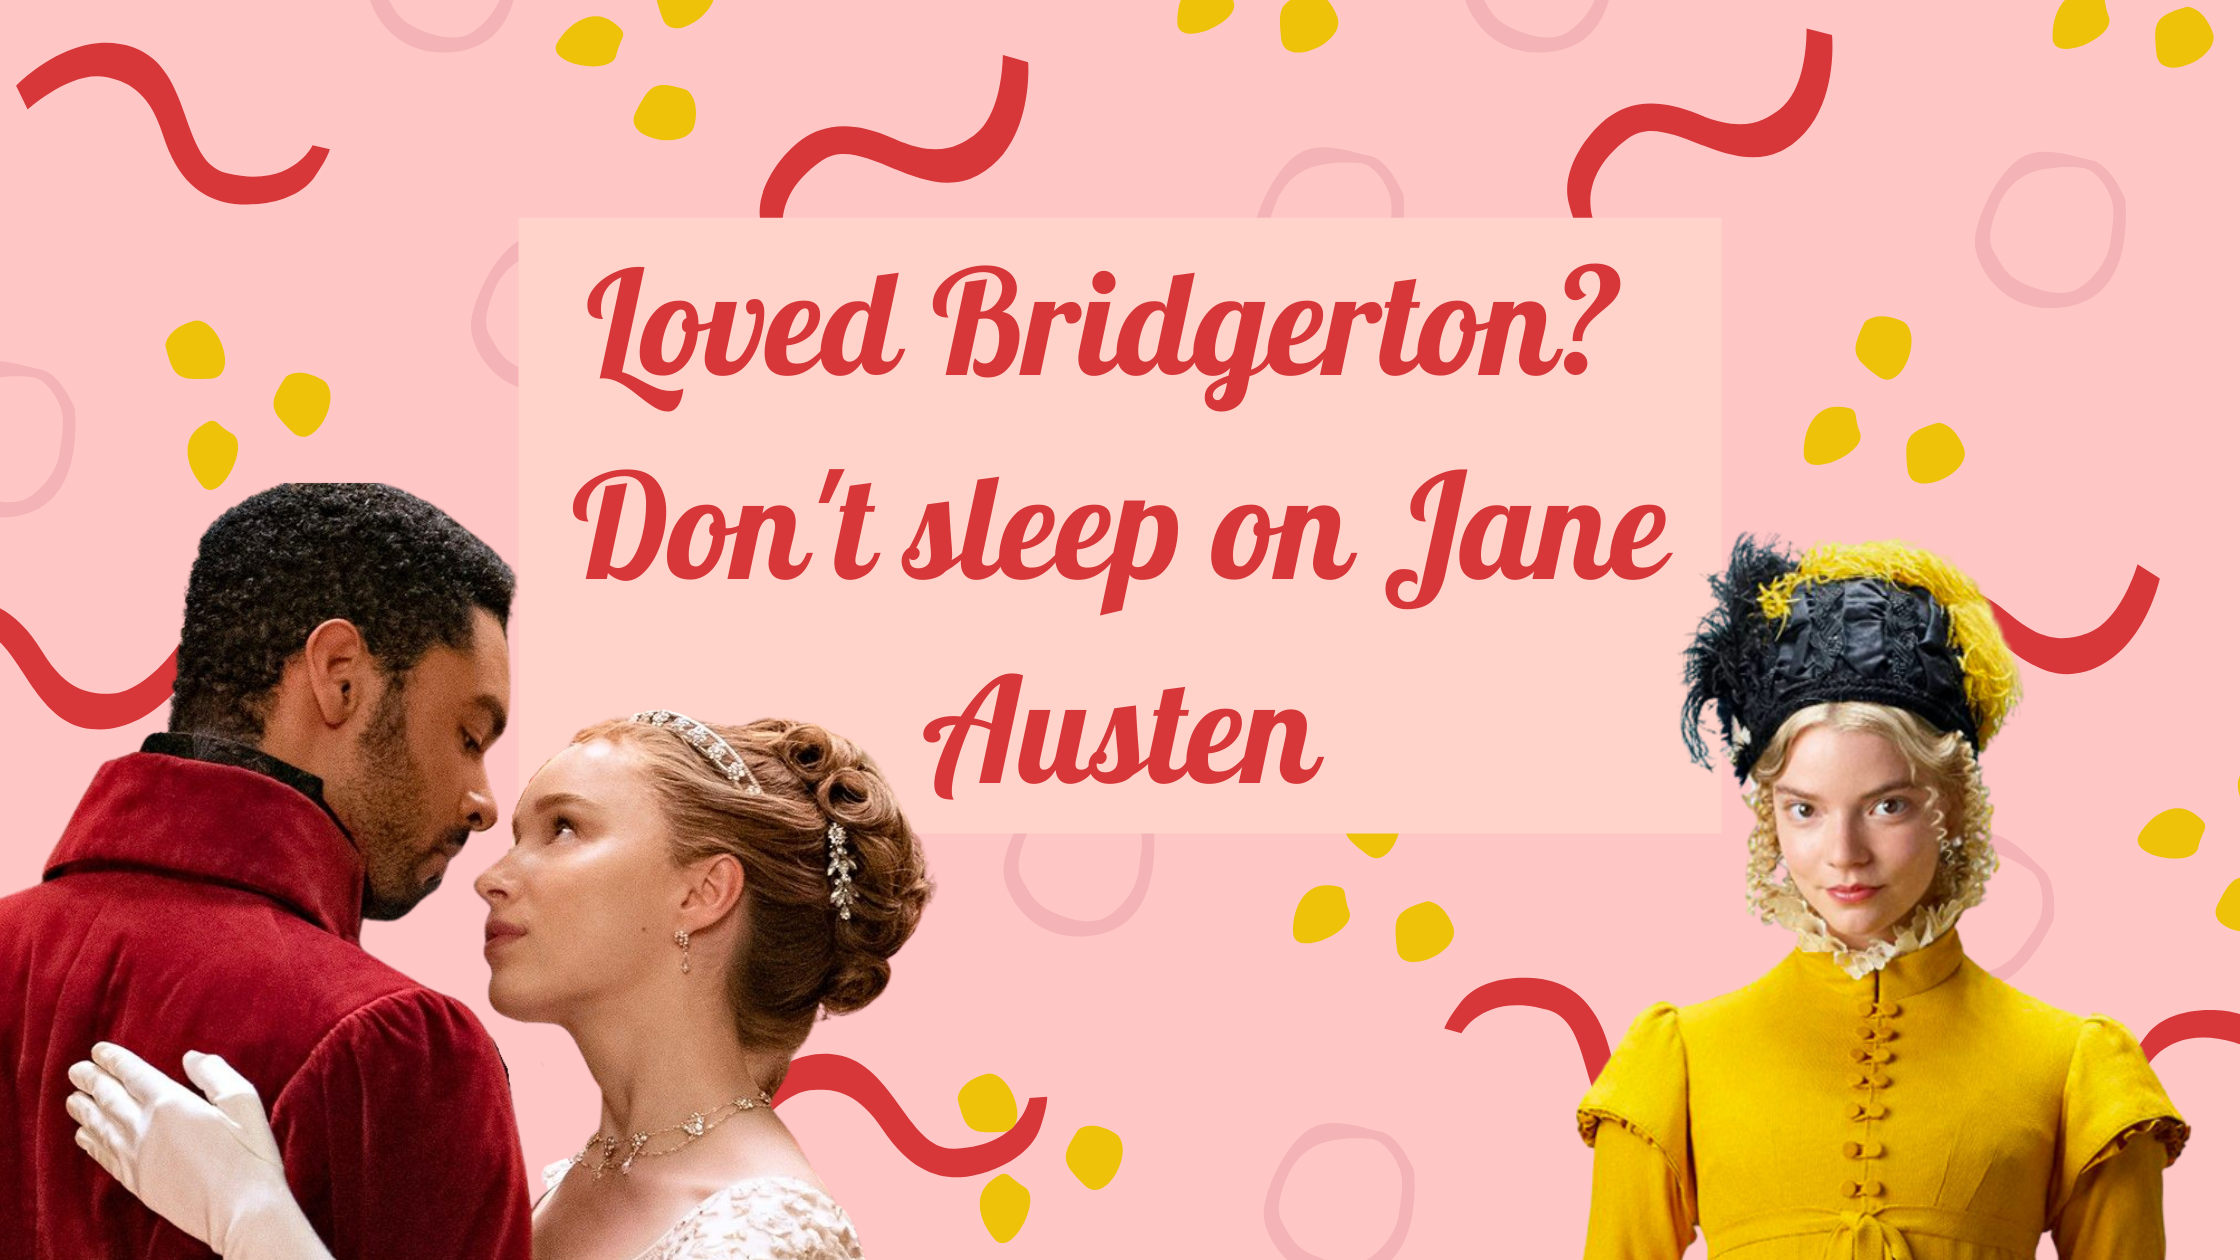 Loved Bridgerton? Don't sleep on Jane Austen